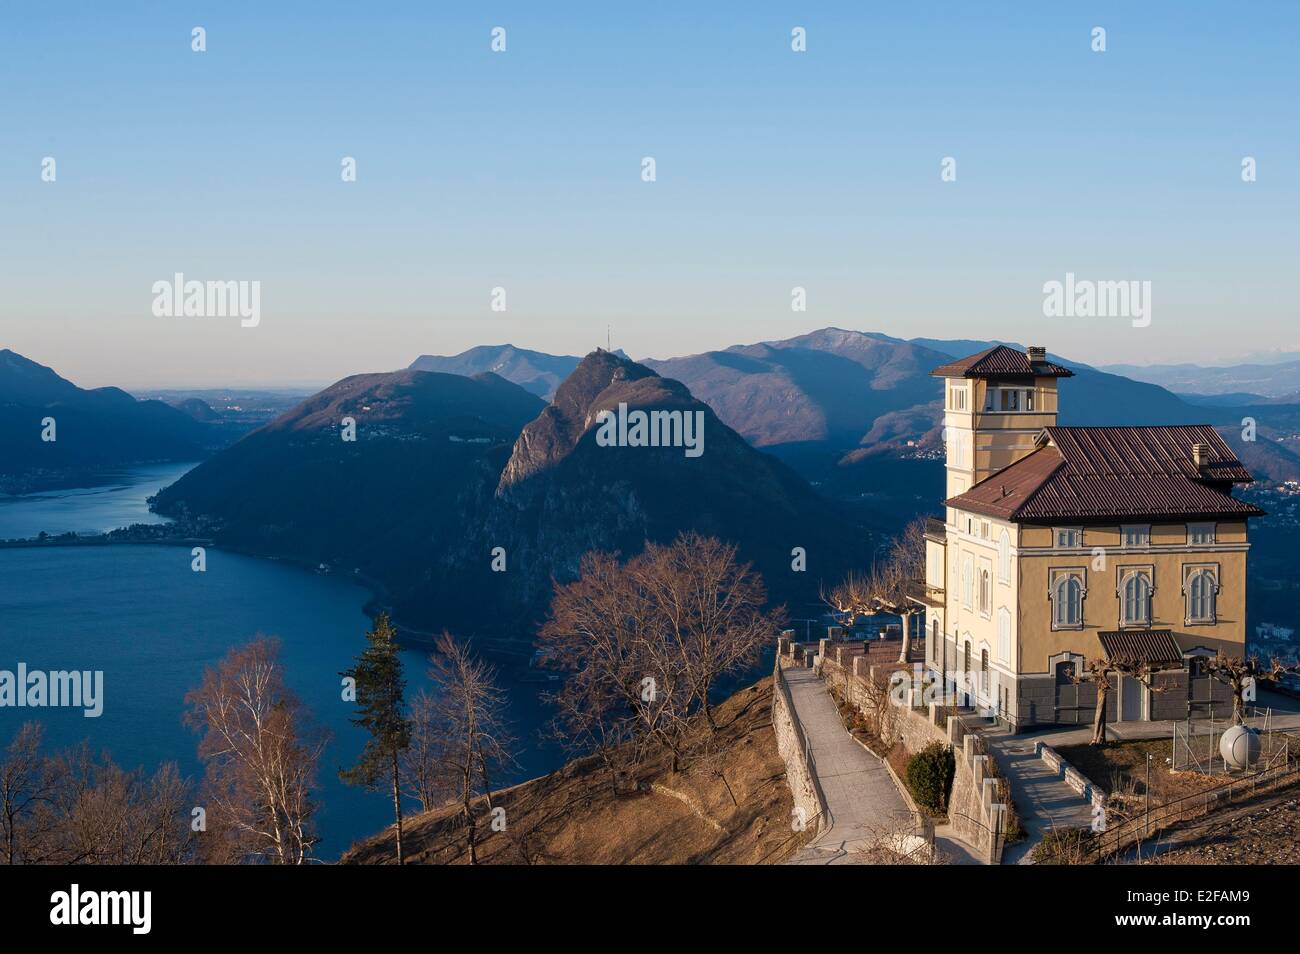 Switzerland, Ticino, Lugano, Monte Bre, view of Lugano Stock Photo